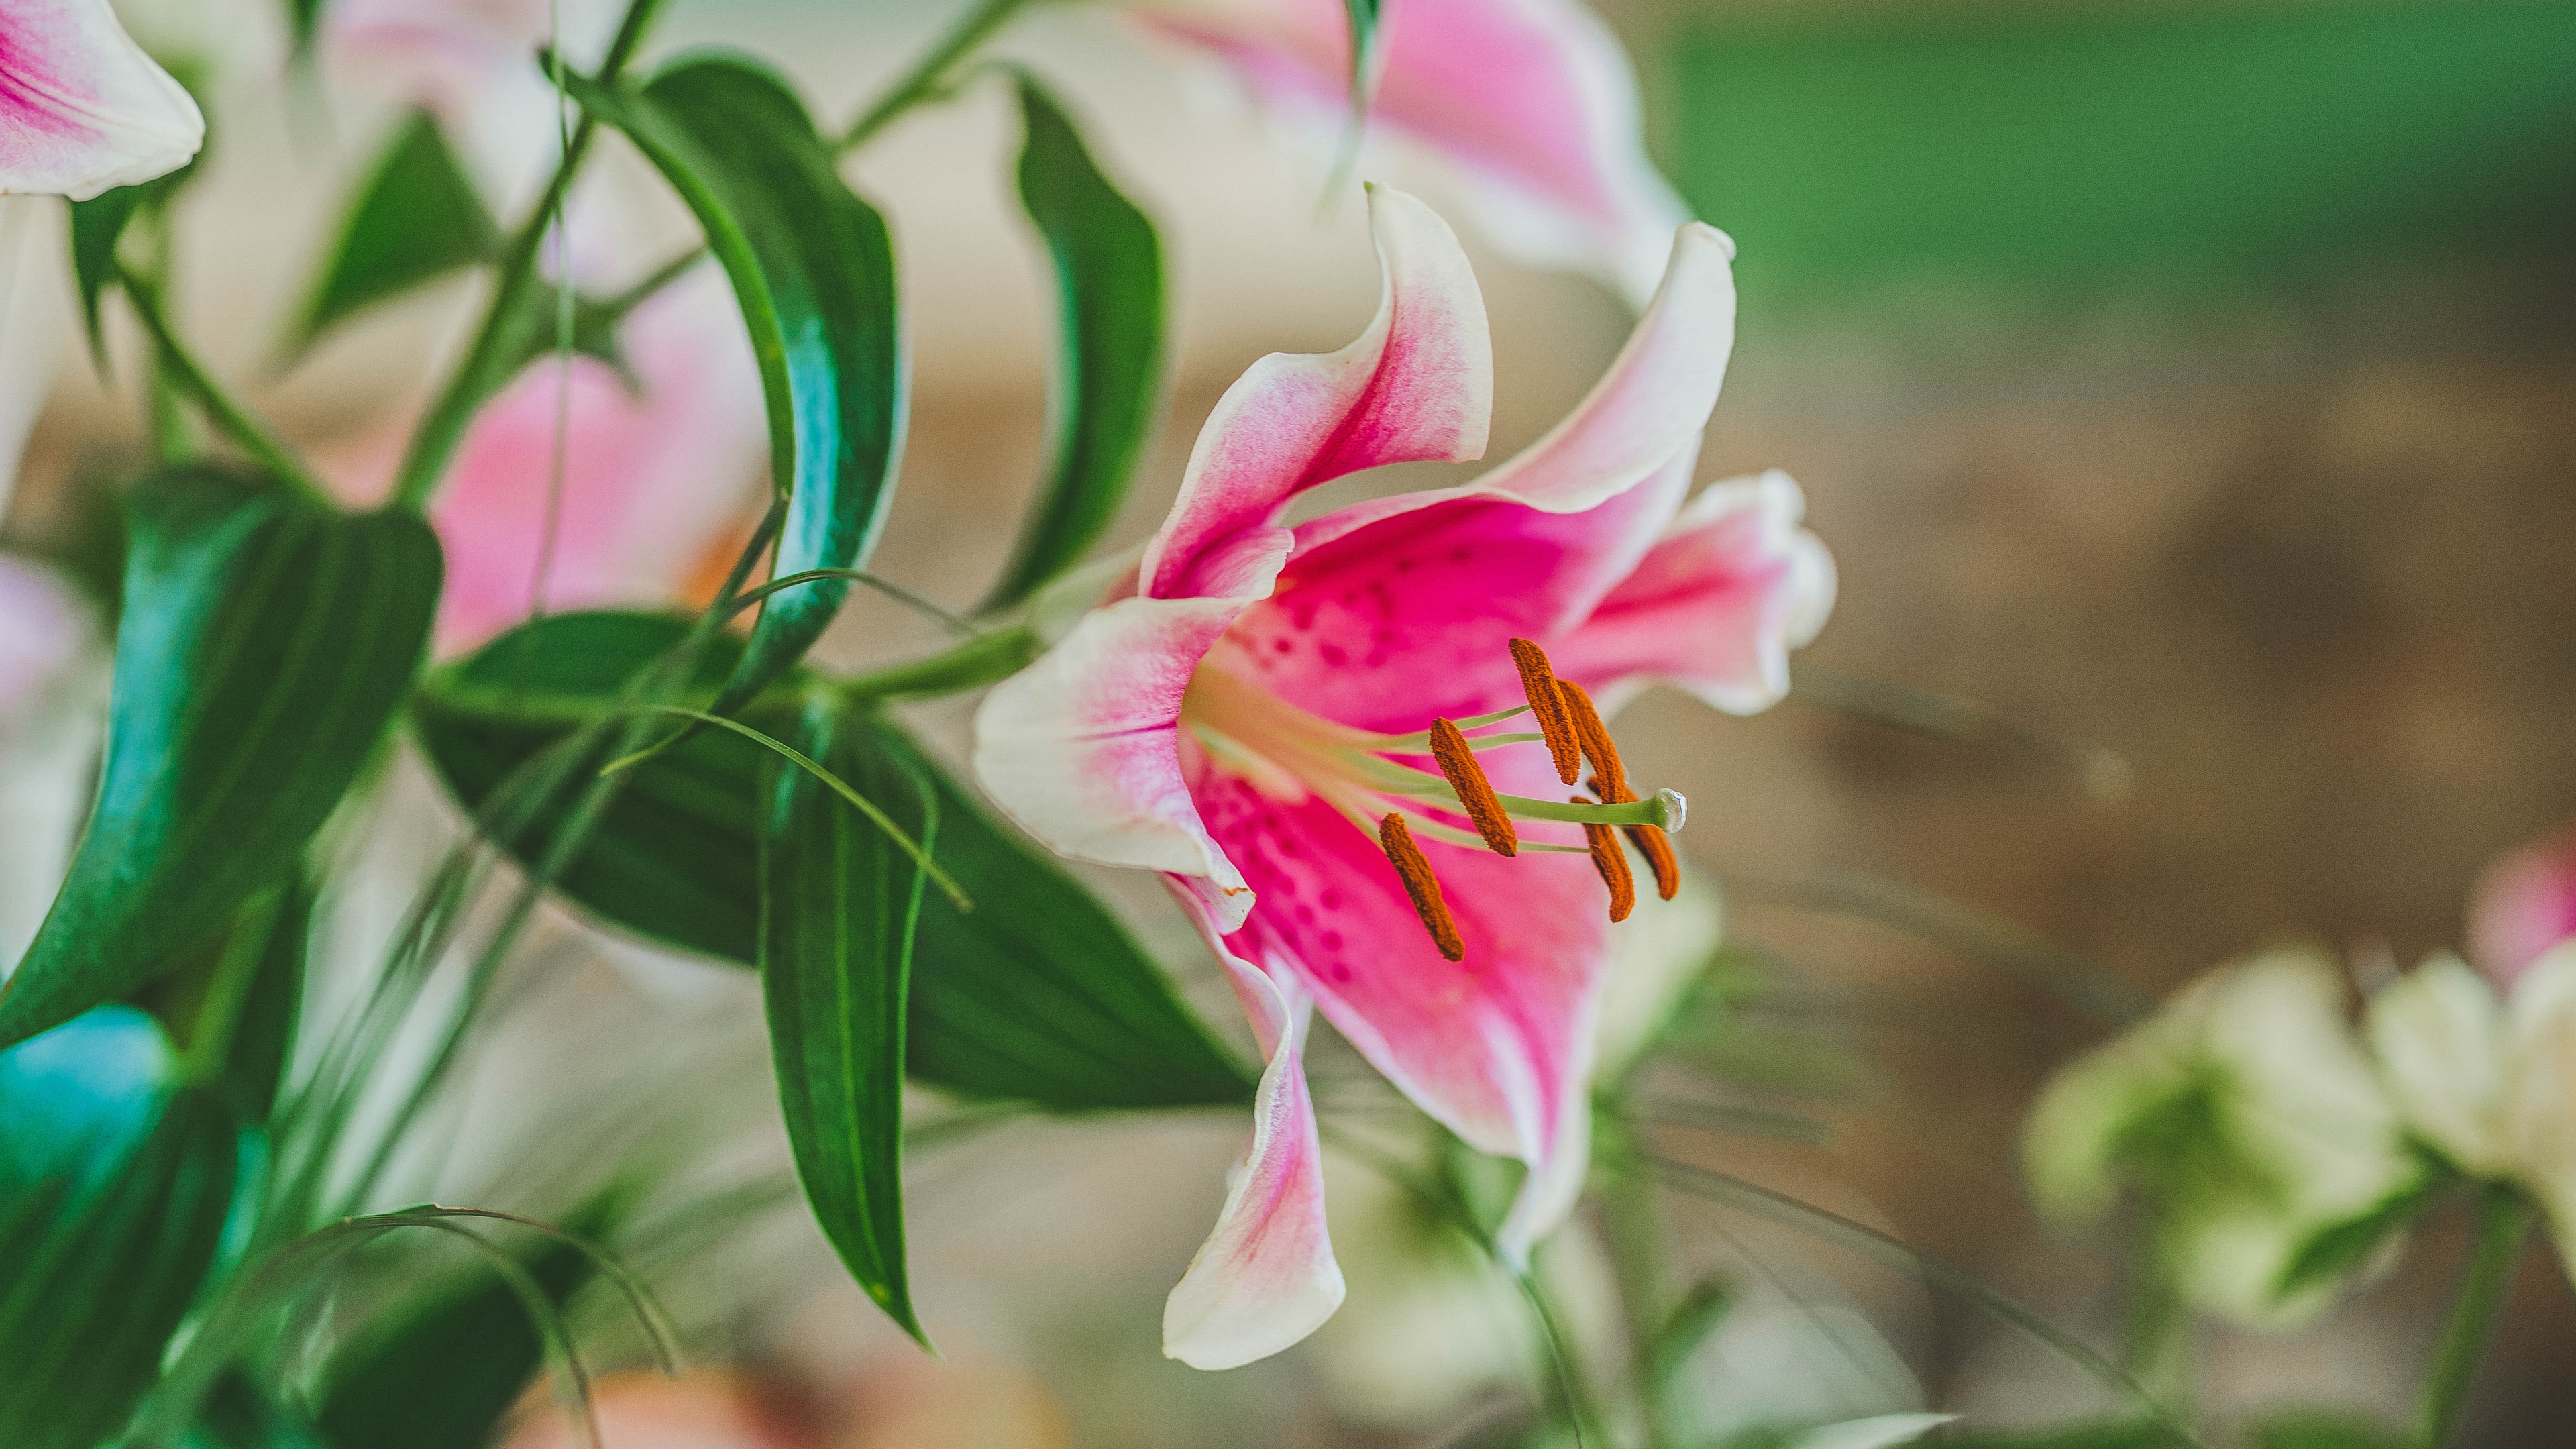 Pink and White Flower in Tilt Shift Lens. Wallpaper in 3840x2160 Resolution